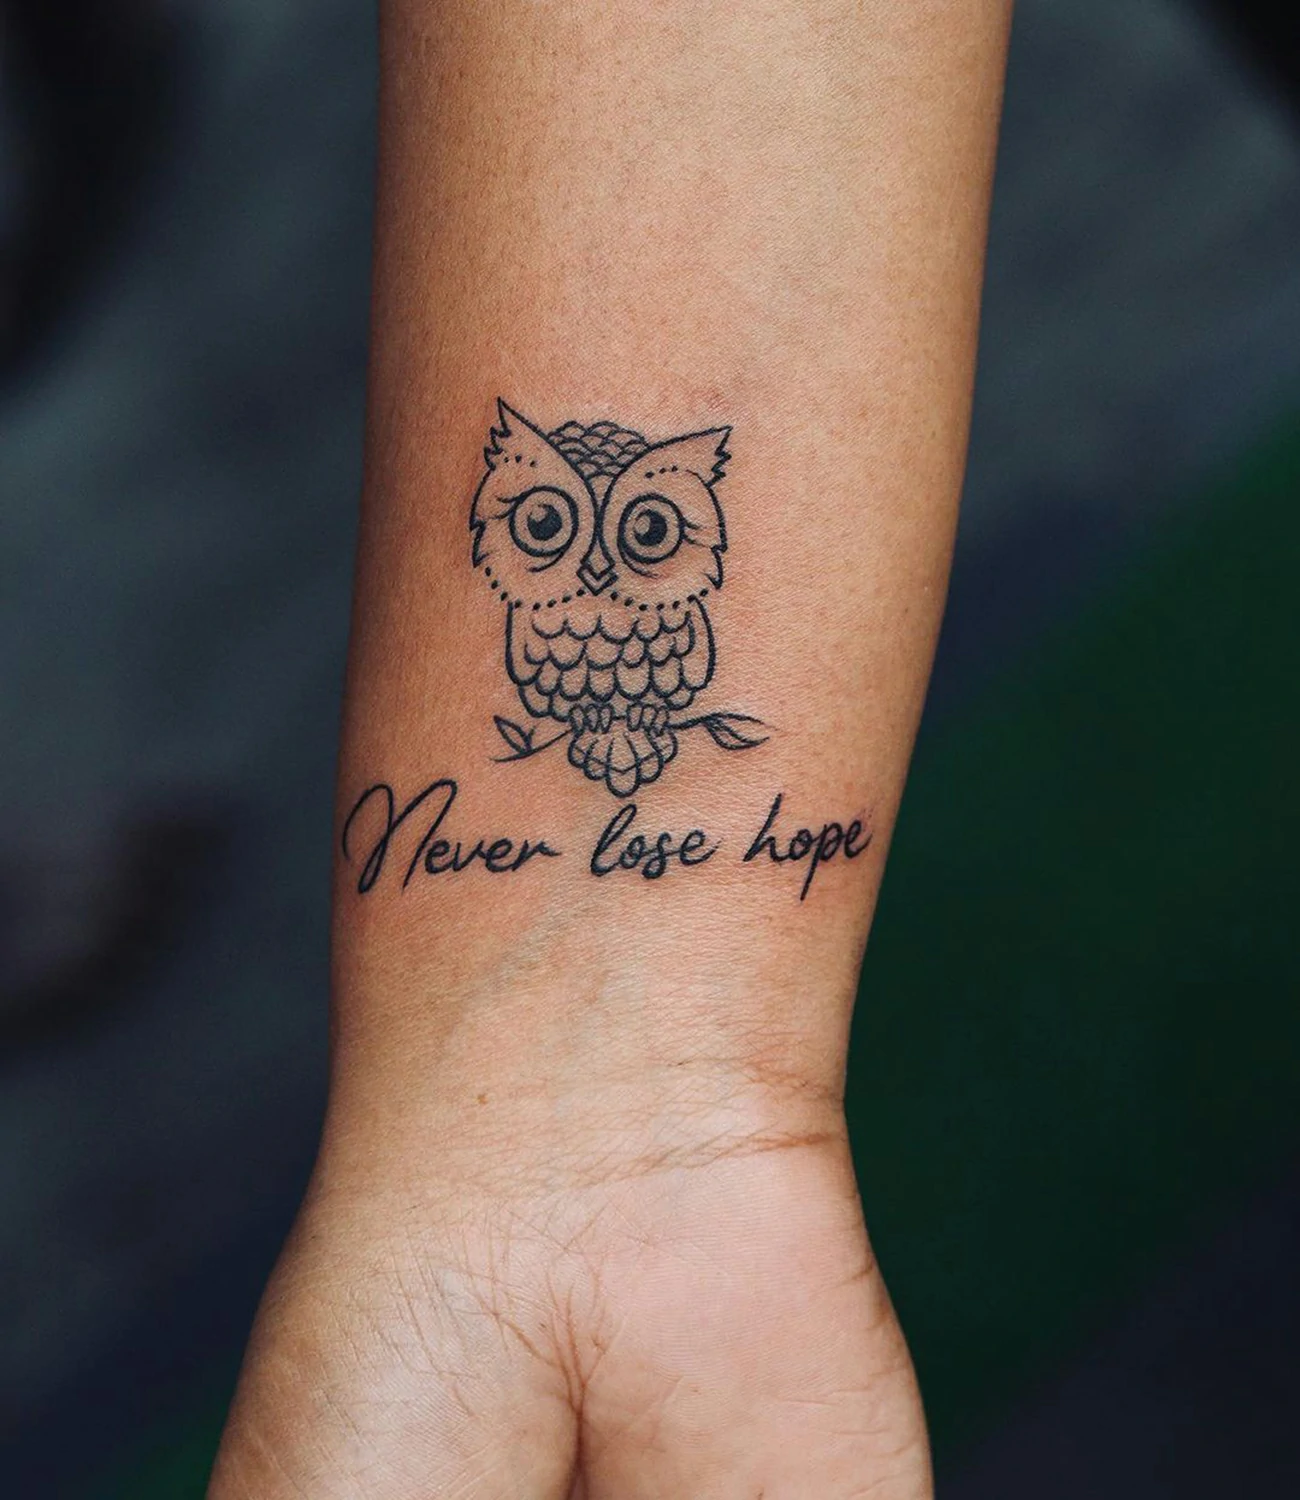 Wrist Small Owl Tattoos